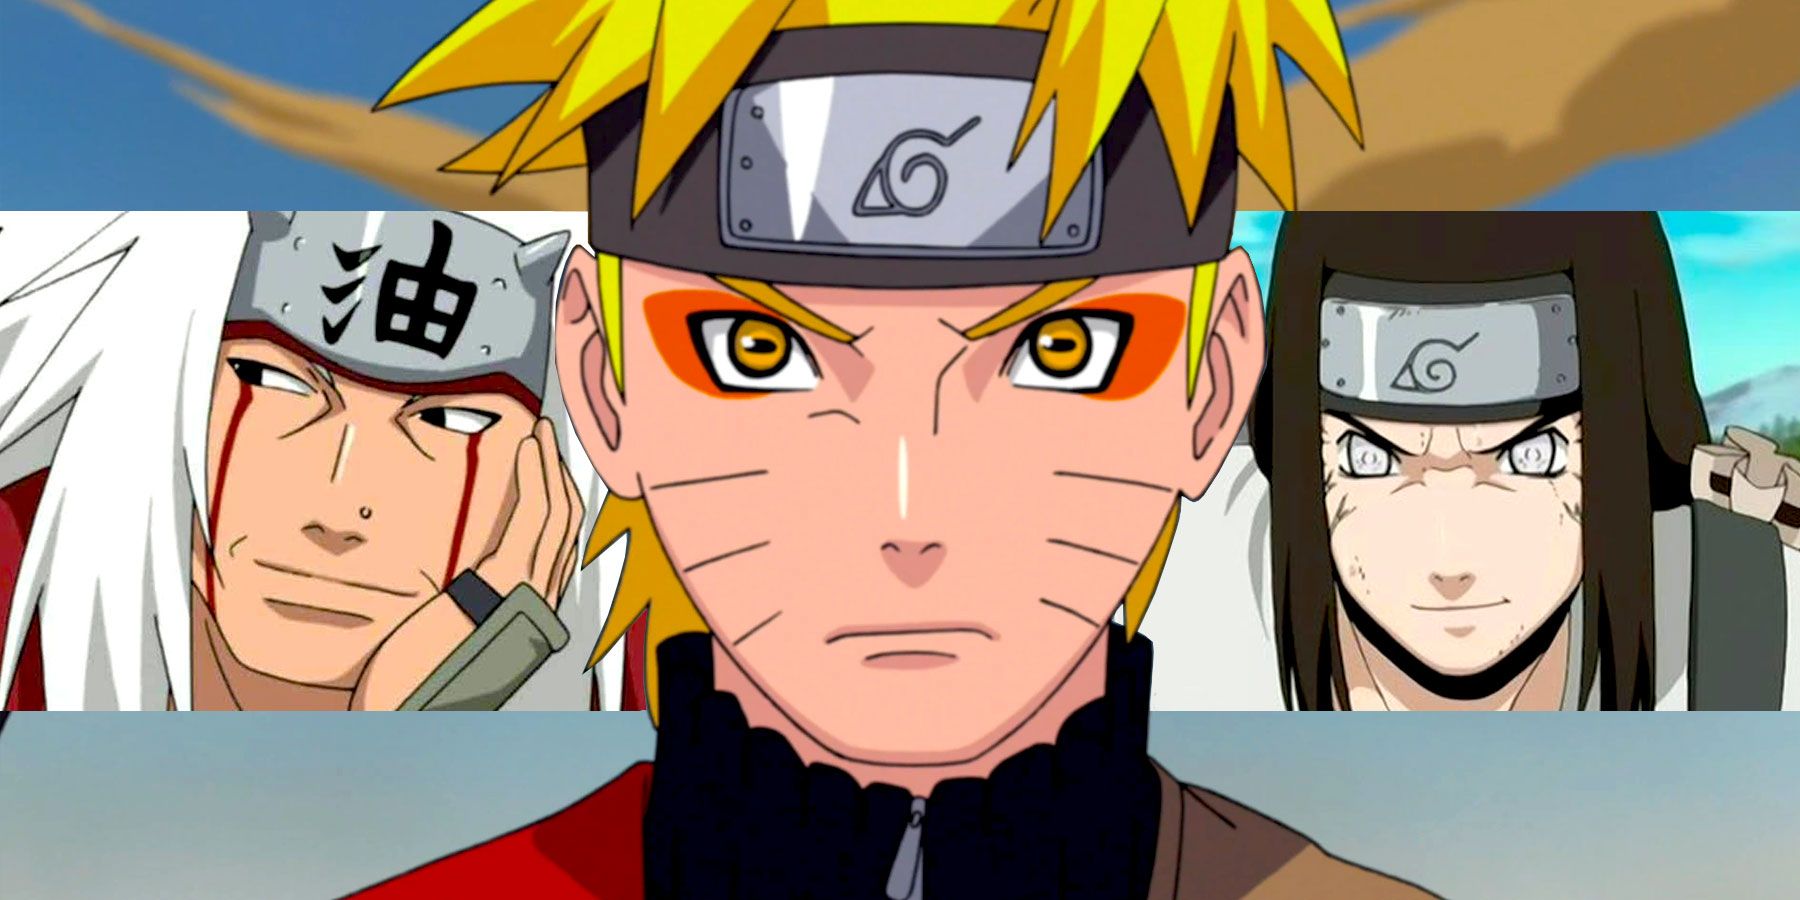 Sasuke ((Naruto)) | Ask That Anime Character | Quotev